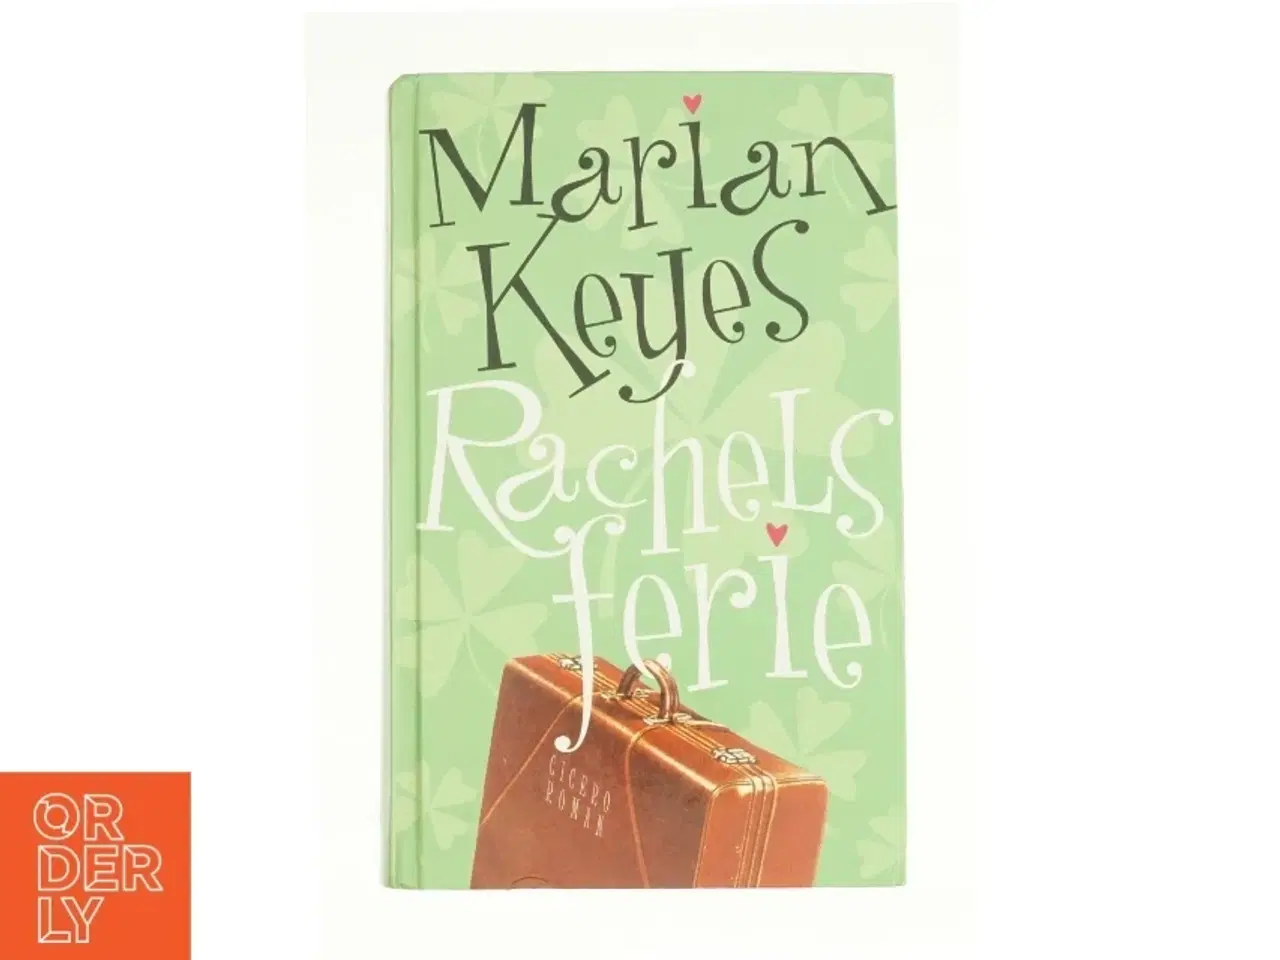 Billede 1 - Rachels ferie af Marian Keyes (Bog)